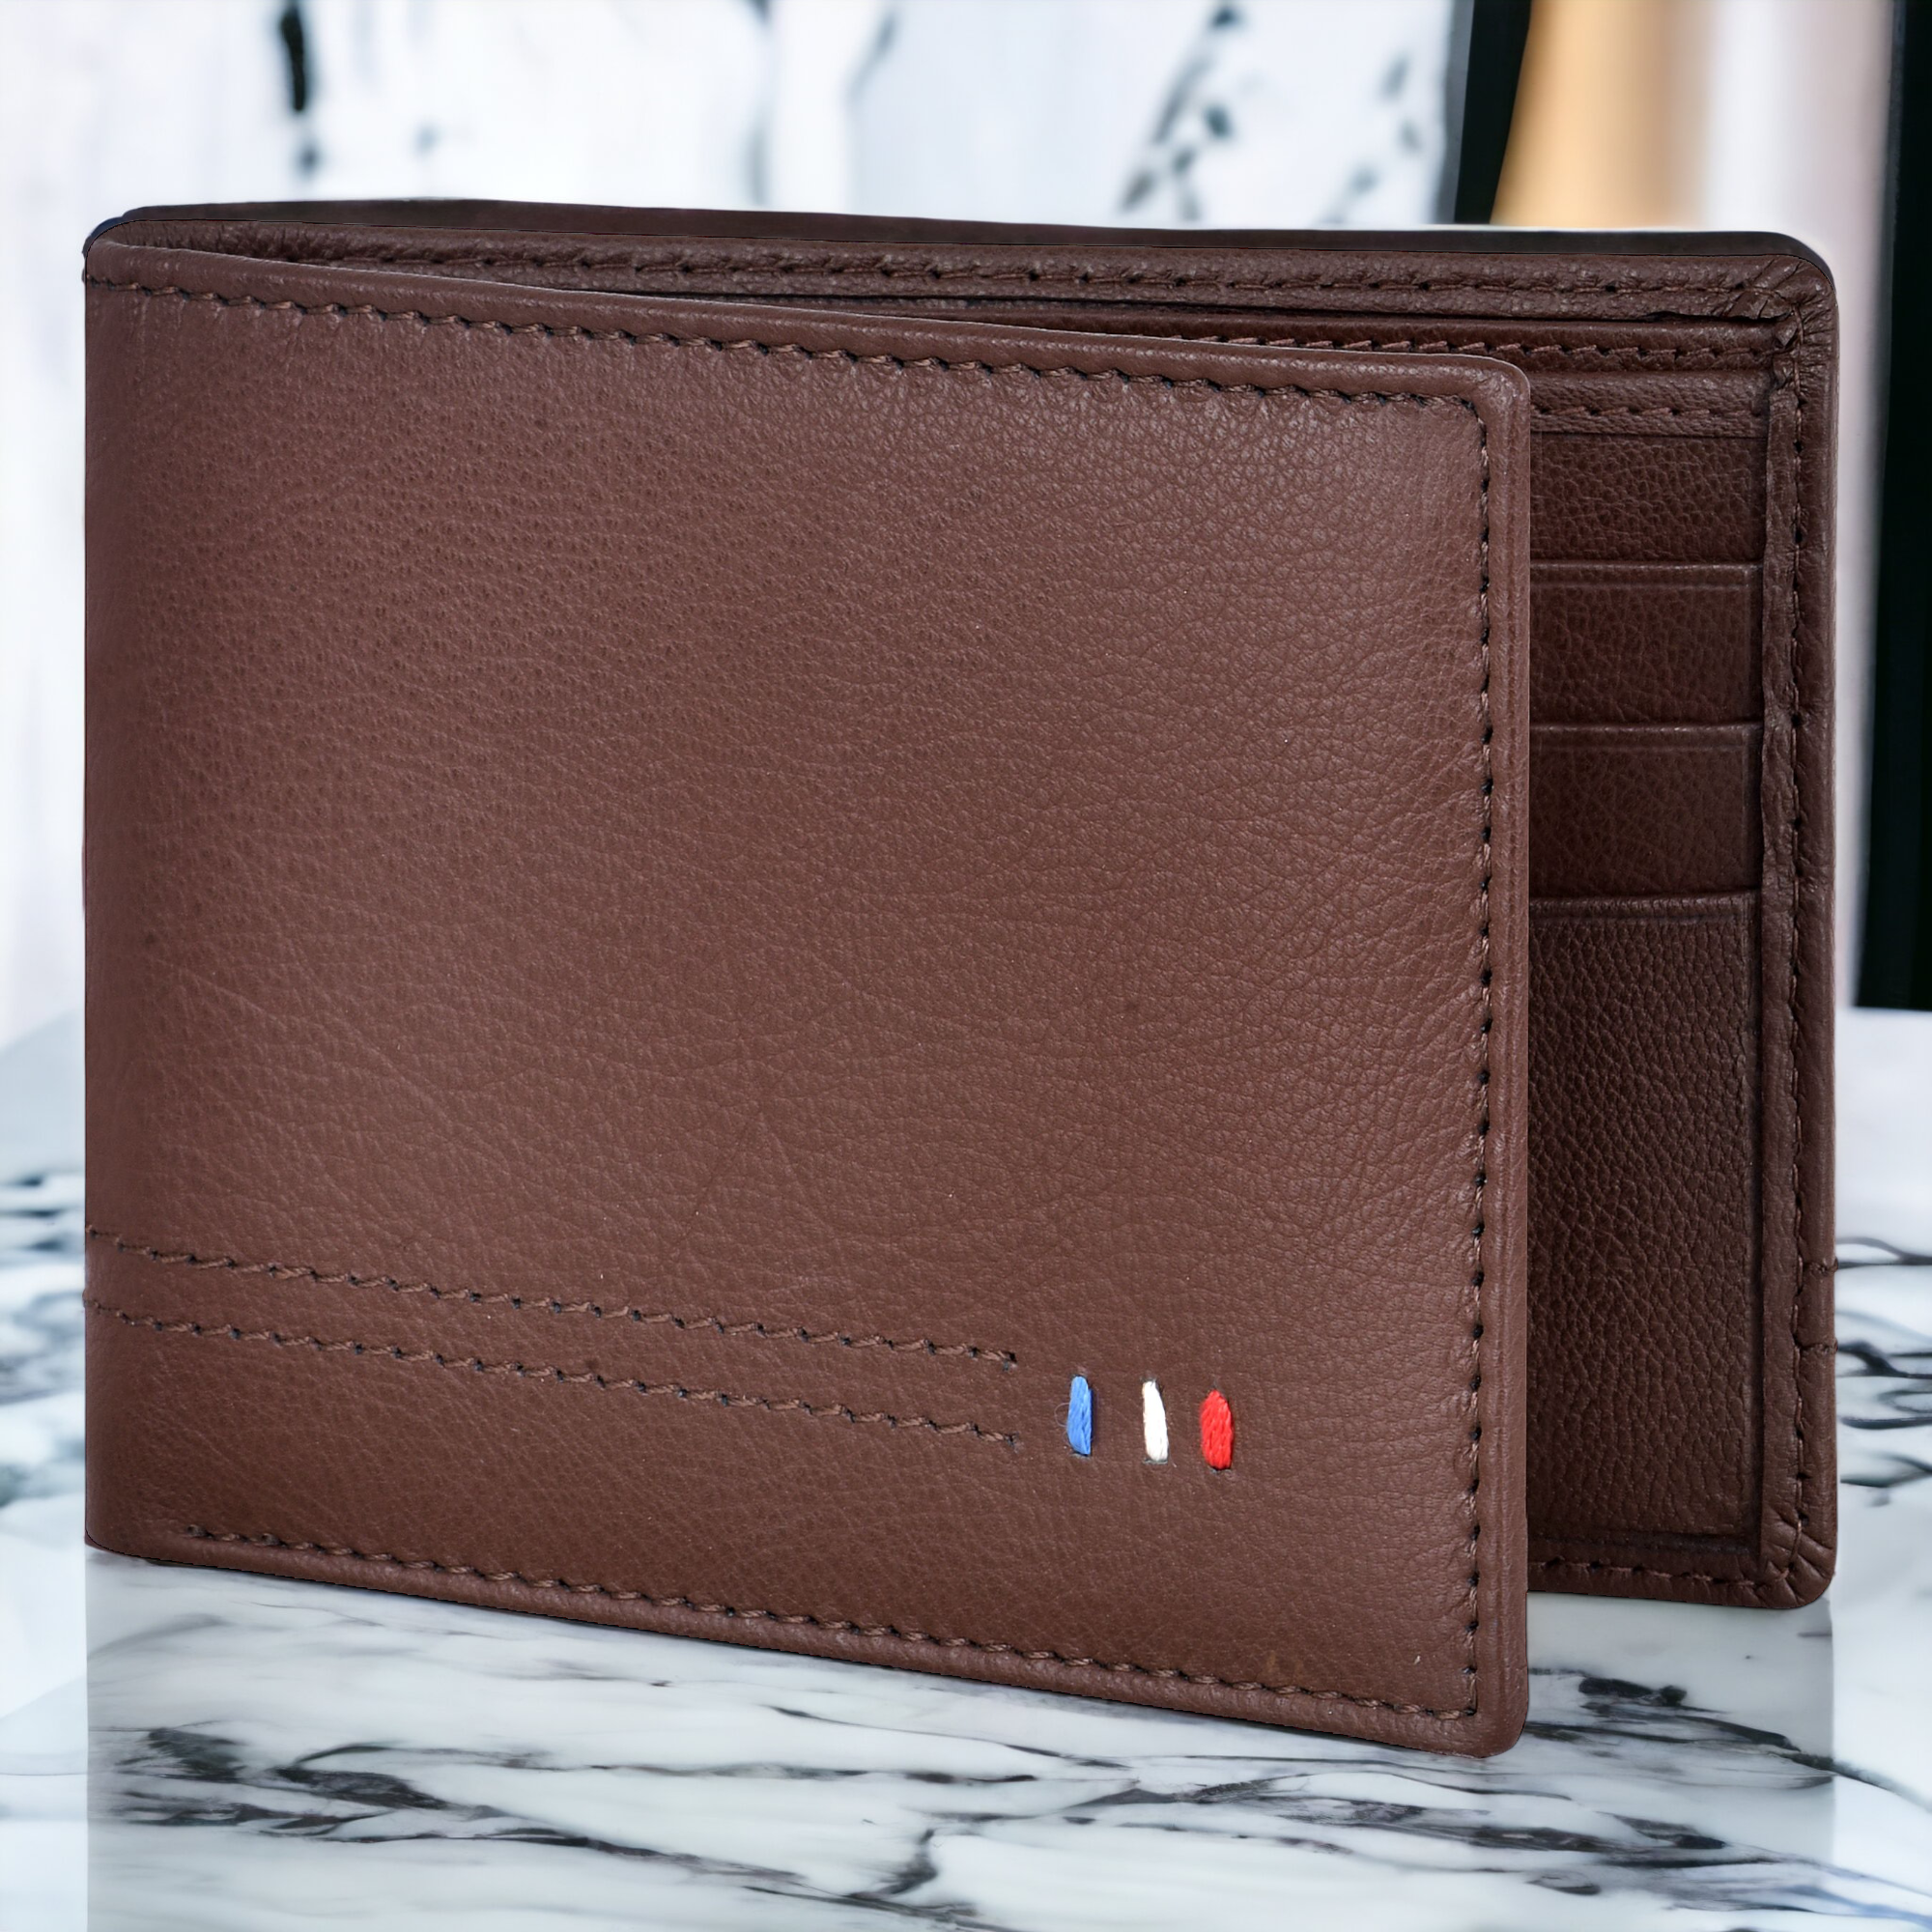 Lorenz Umber Brown Leather RFID Blocking Wallet For Men